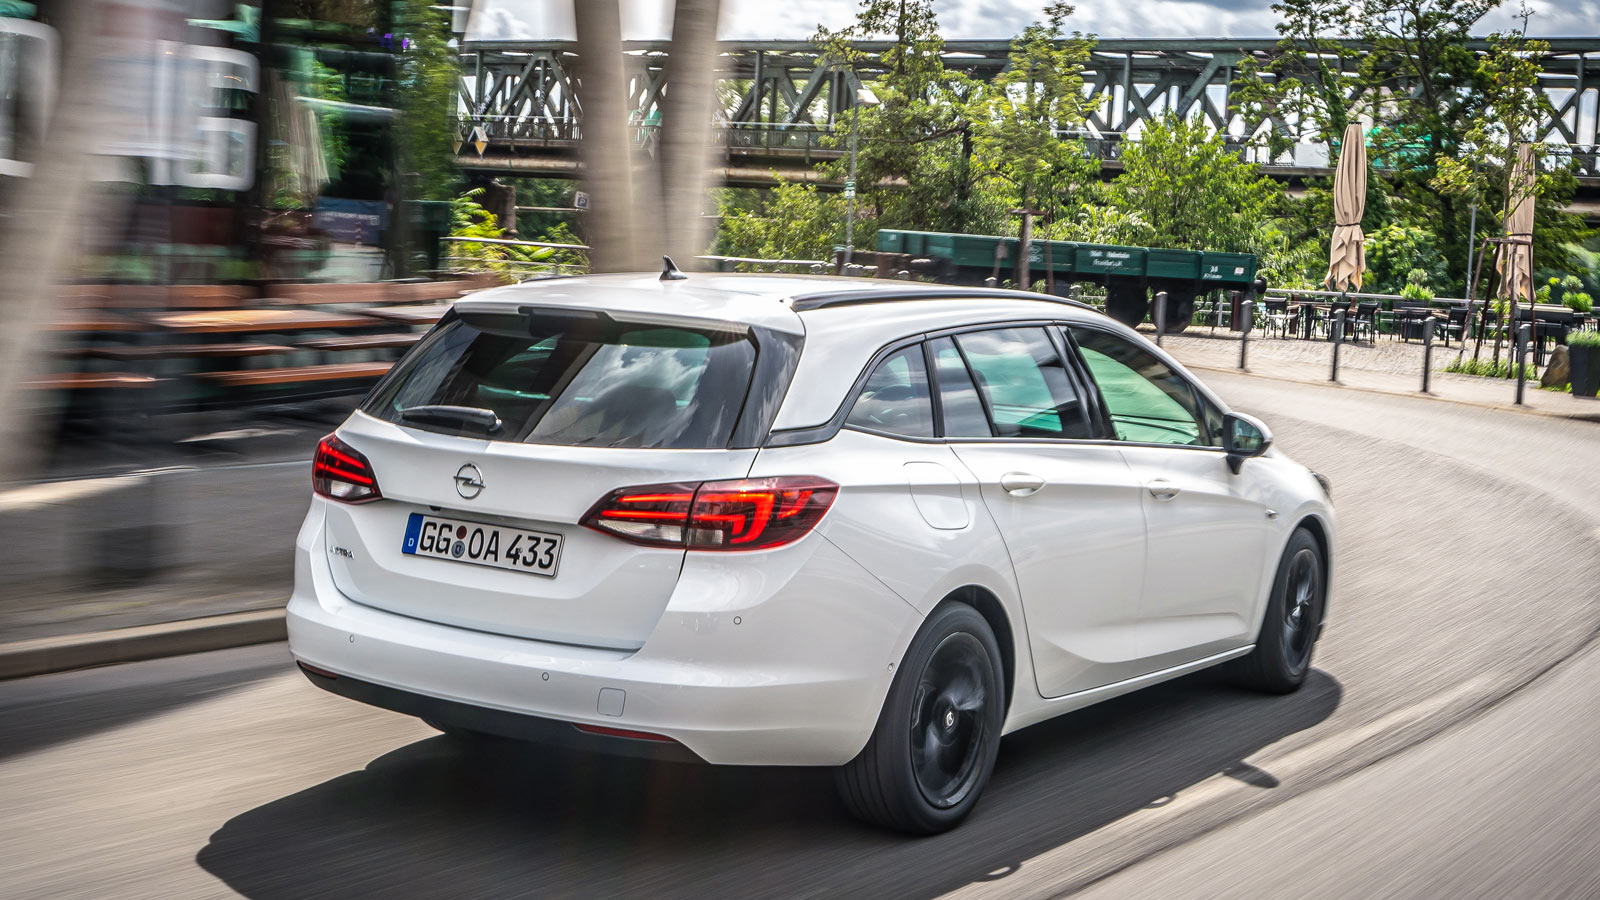 Biały Opel Astra Kombi na wirażu, szybka jazda miejska. Tylne lampy LED